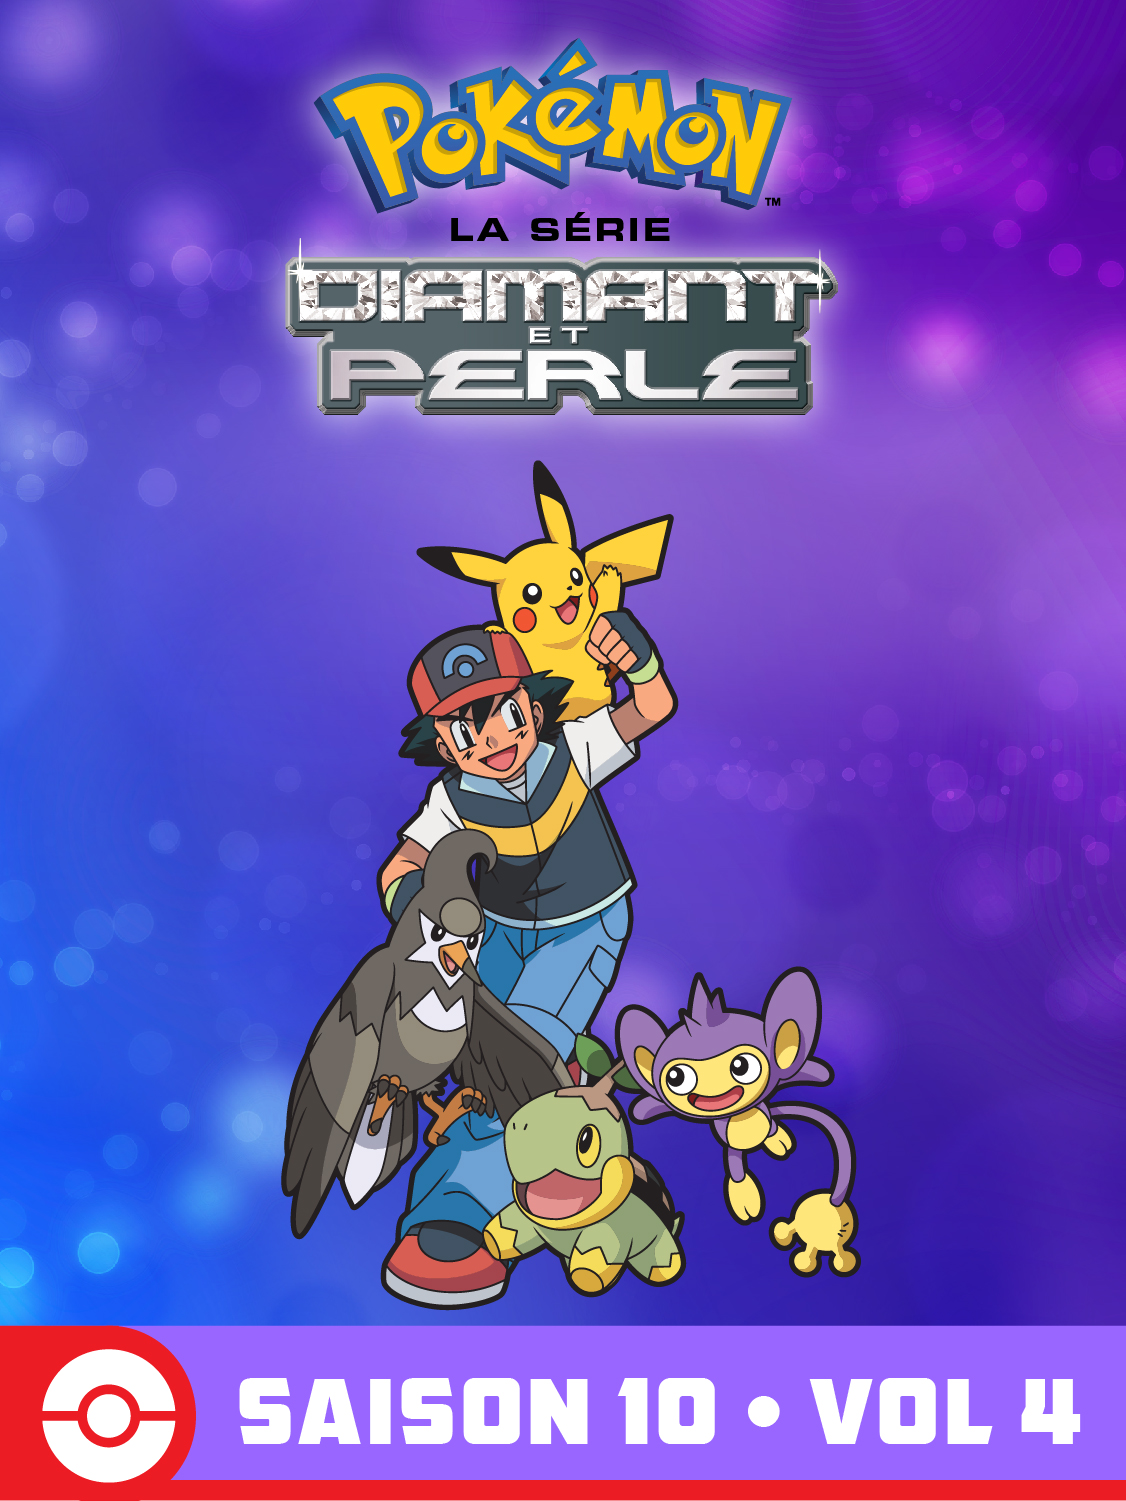  Diamant et Perle Volume 4 Saison 10 de Pokémon la Série - 2010 